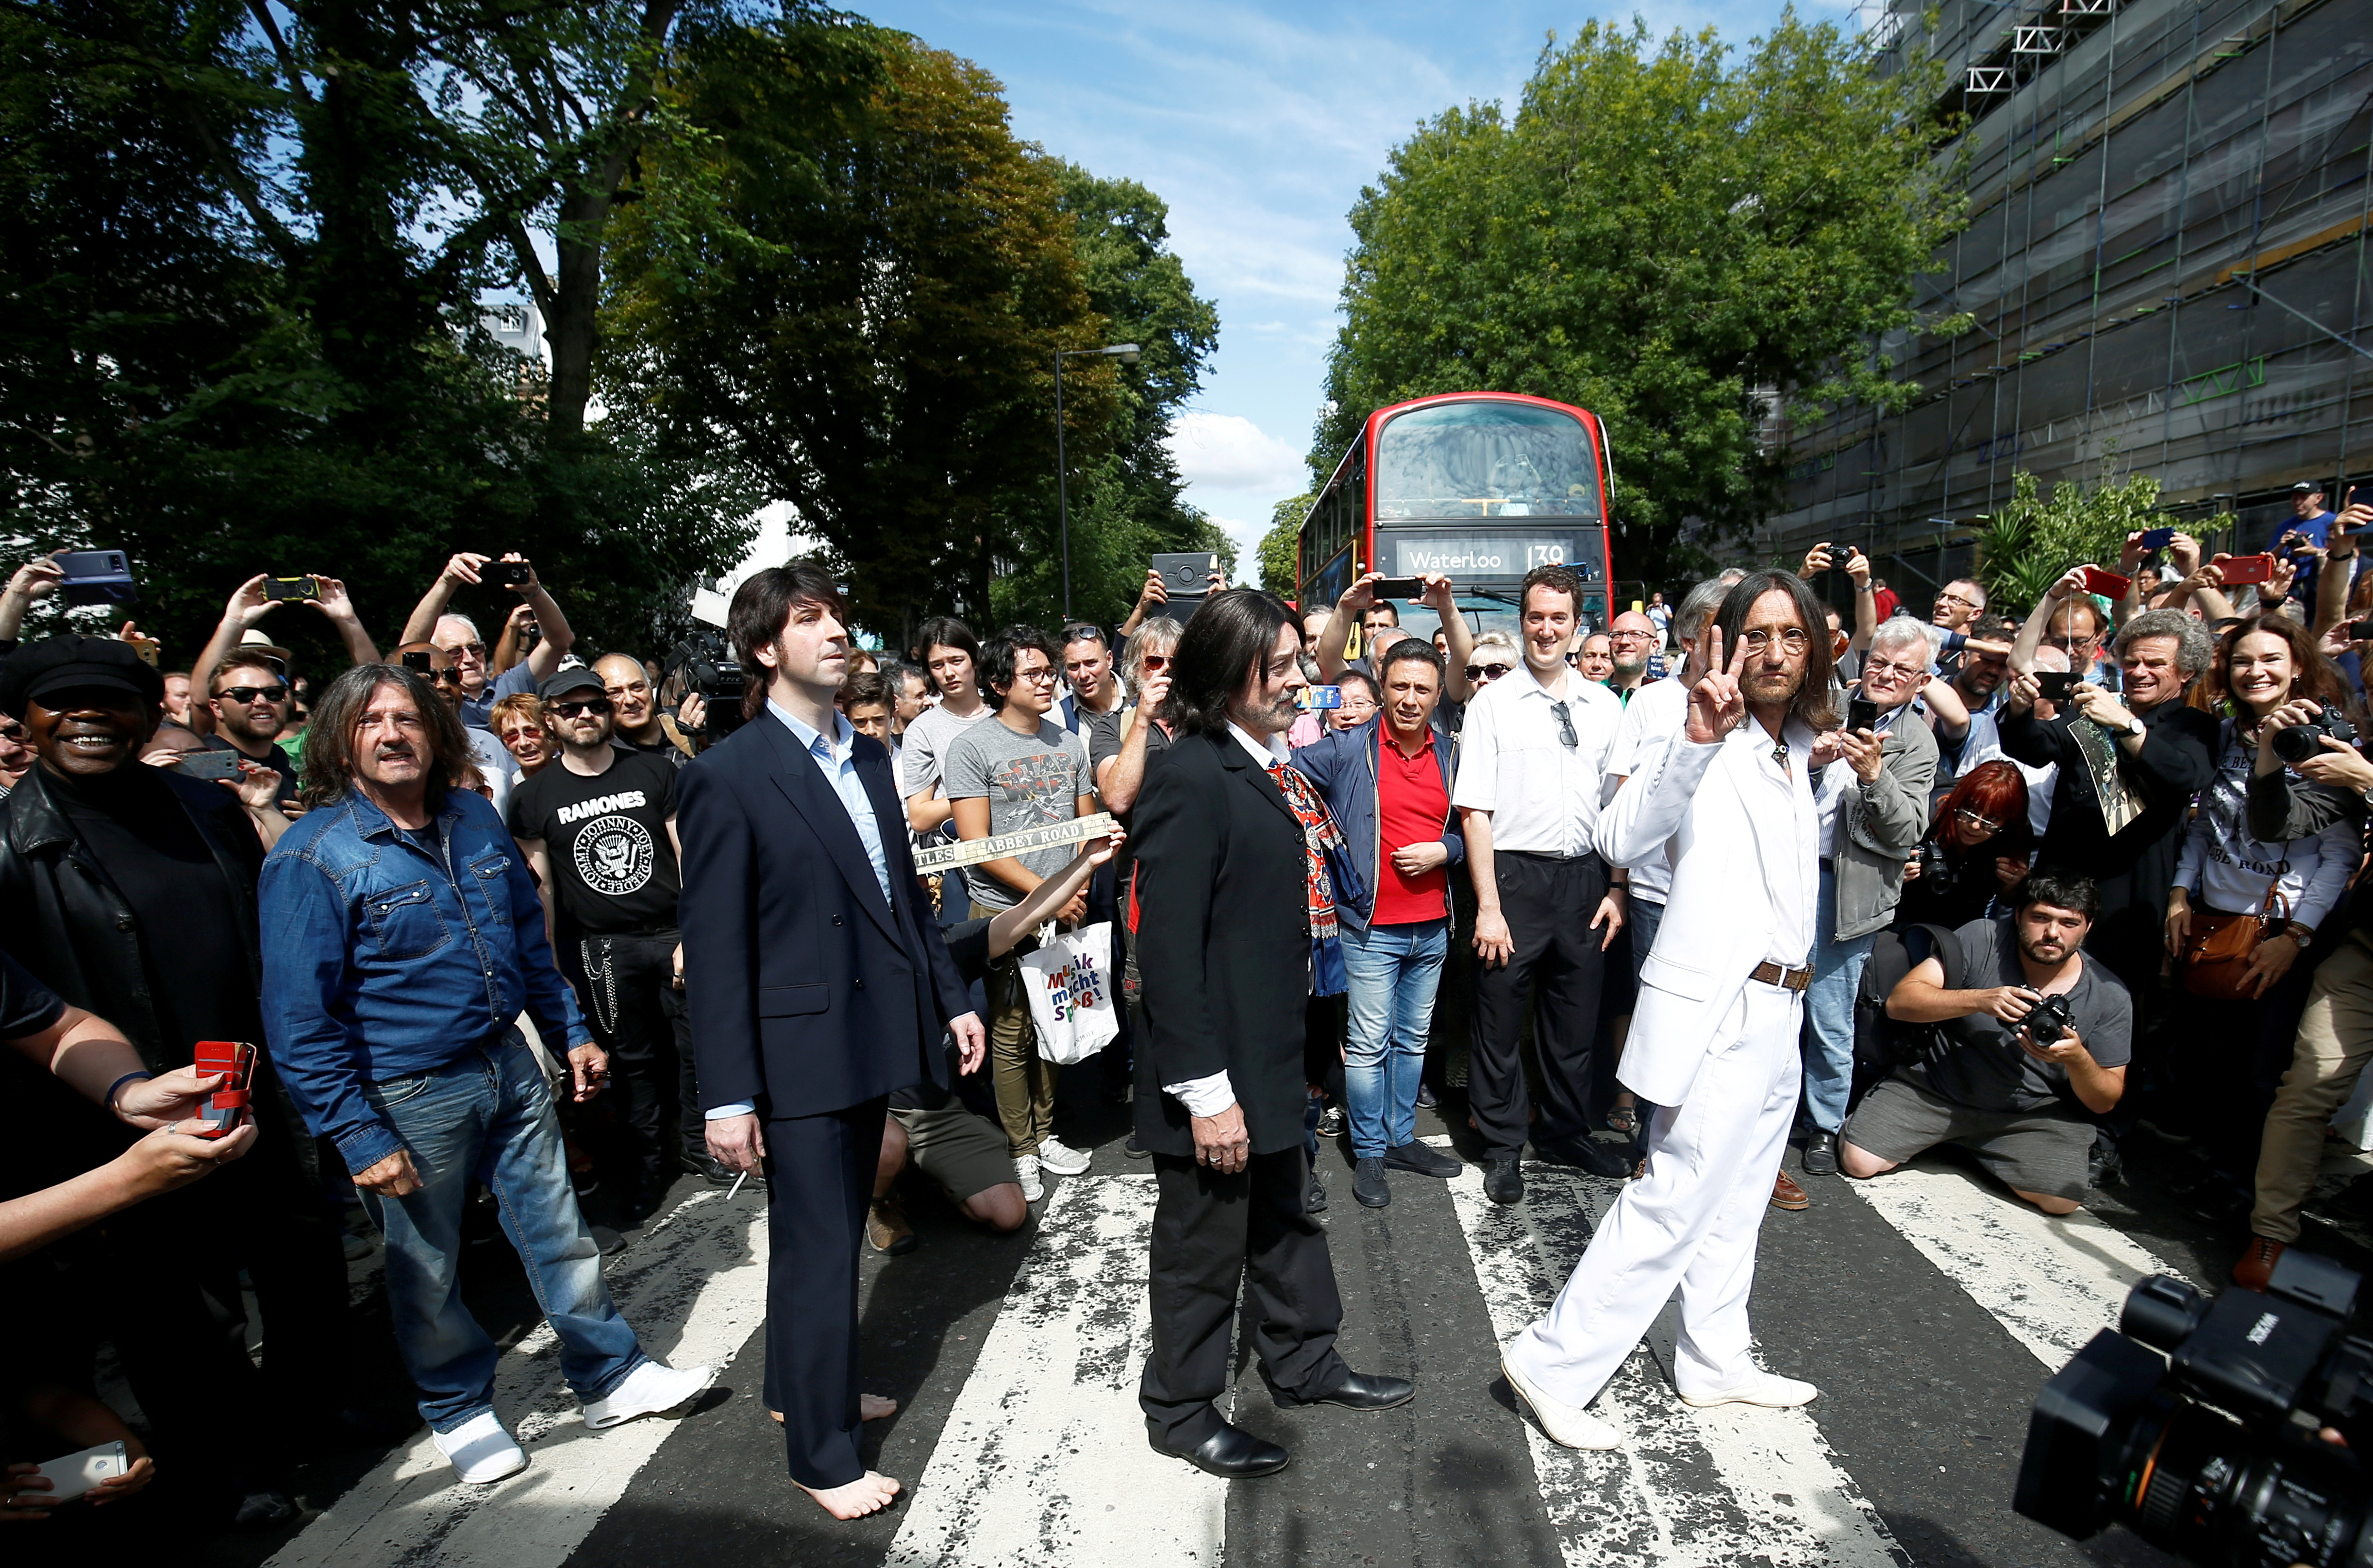 L'album "Abbey Road" des Beatles de retour en tête des ventes